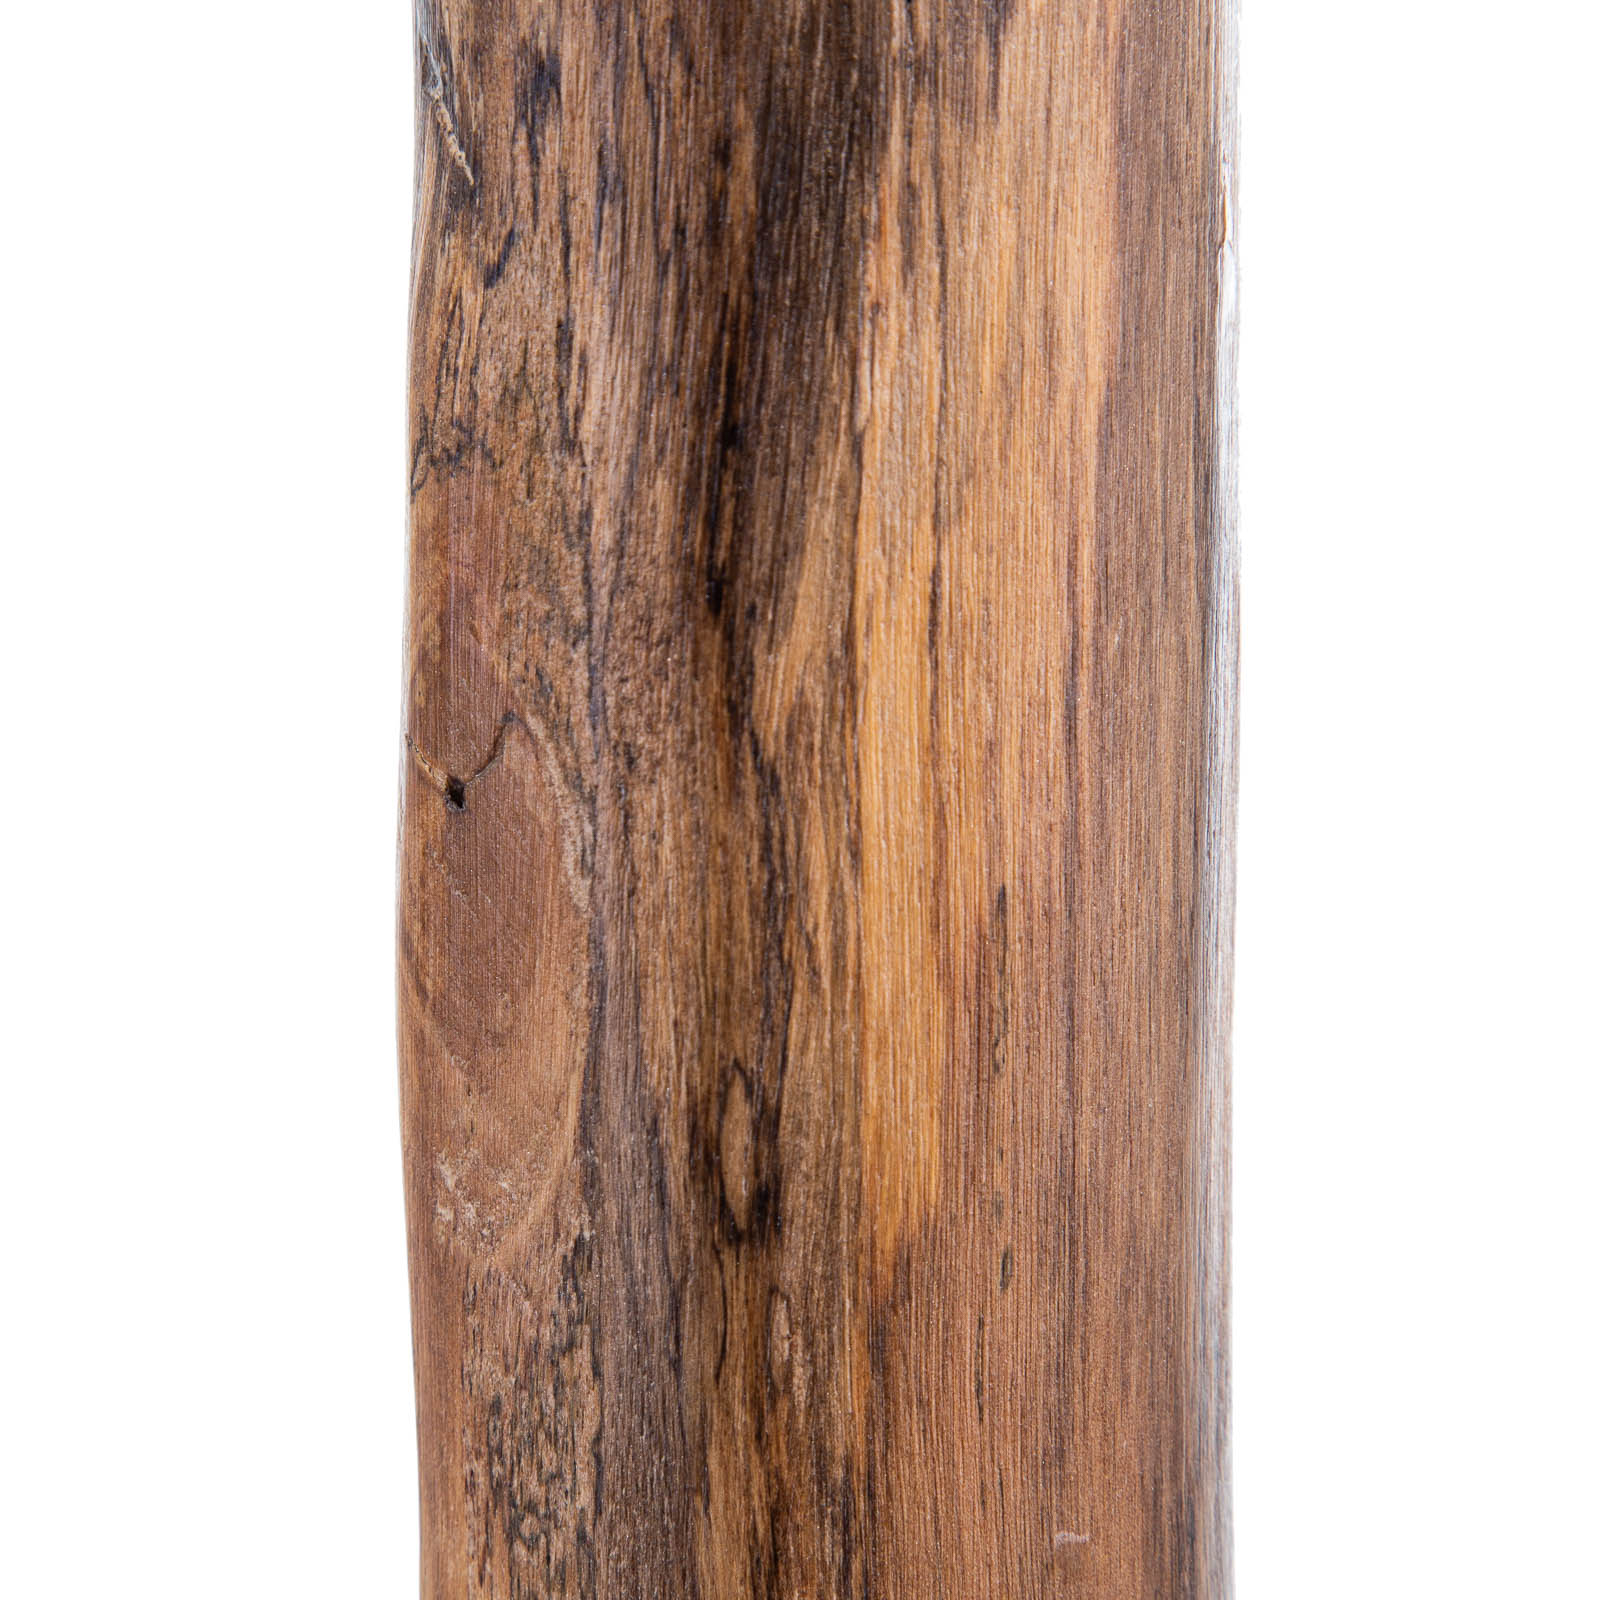 Stojací lampa Norin s rámem z eukalyptového dřeva